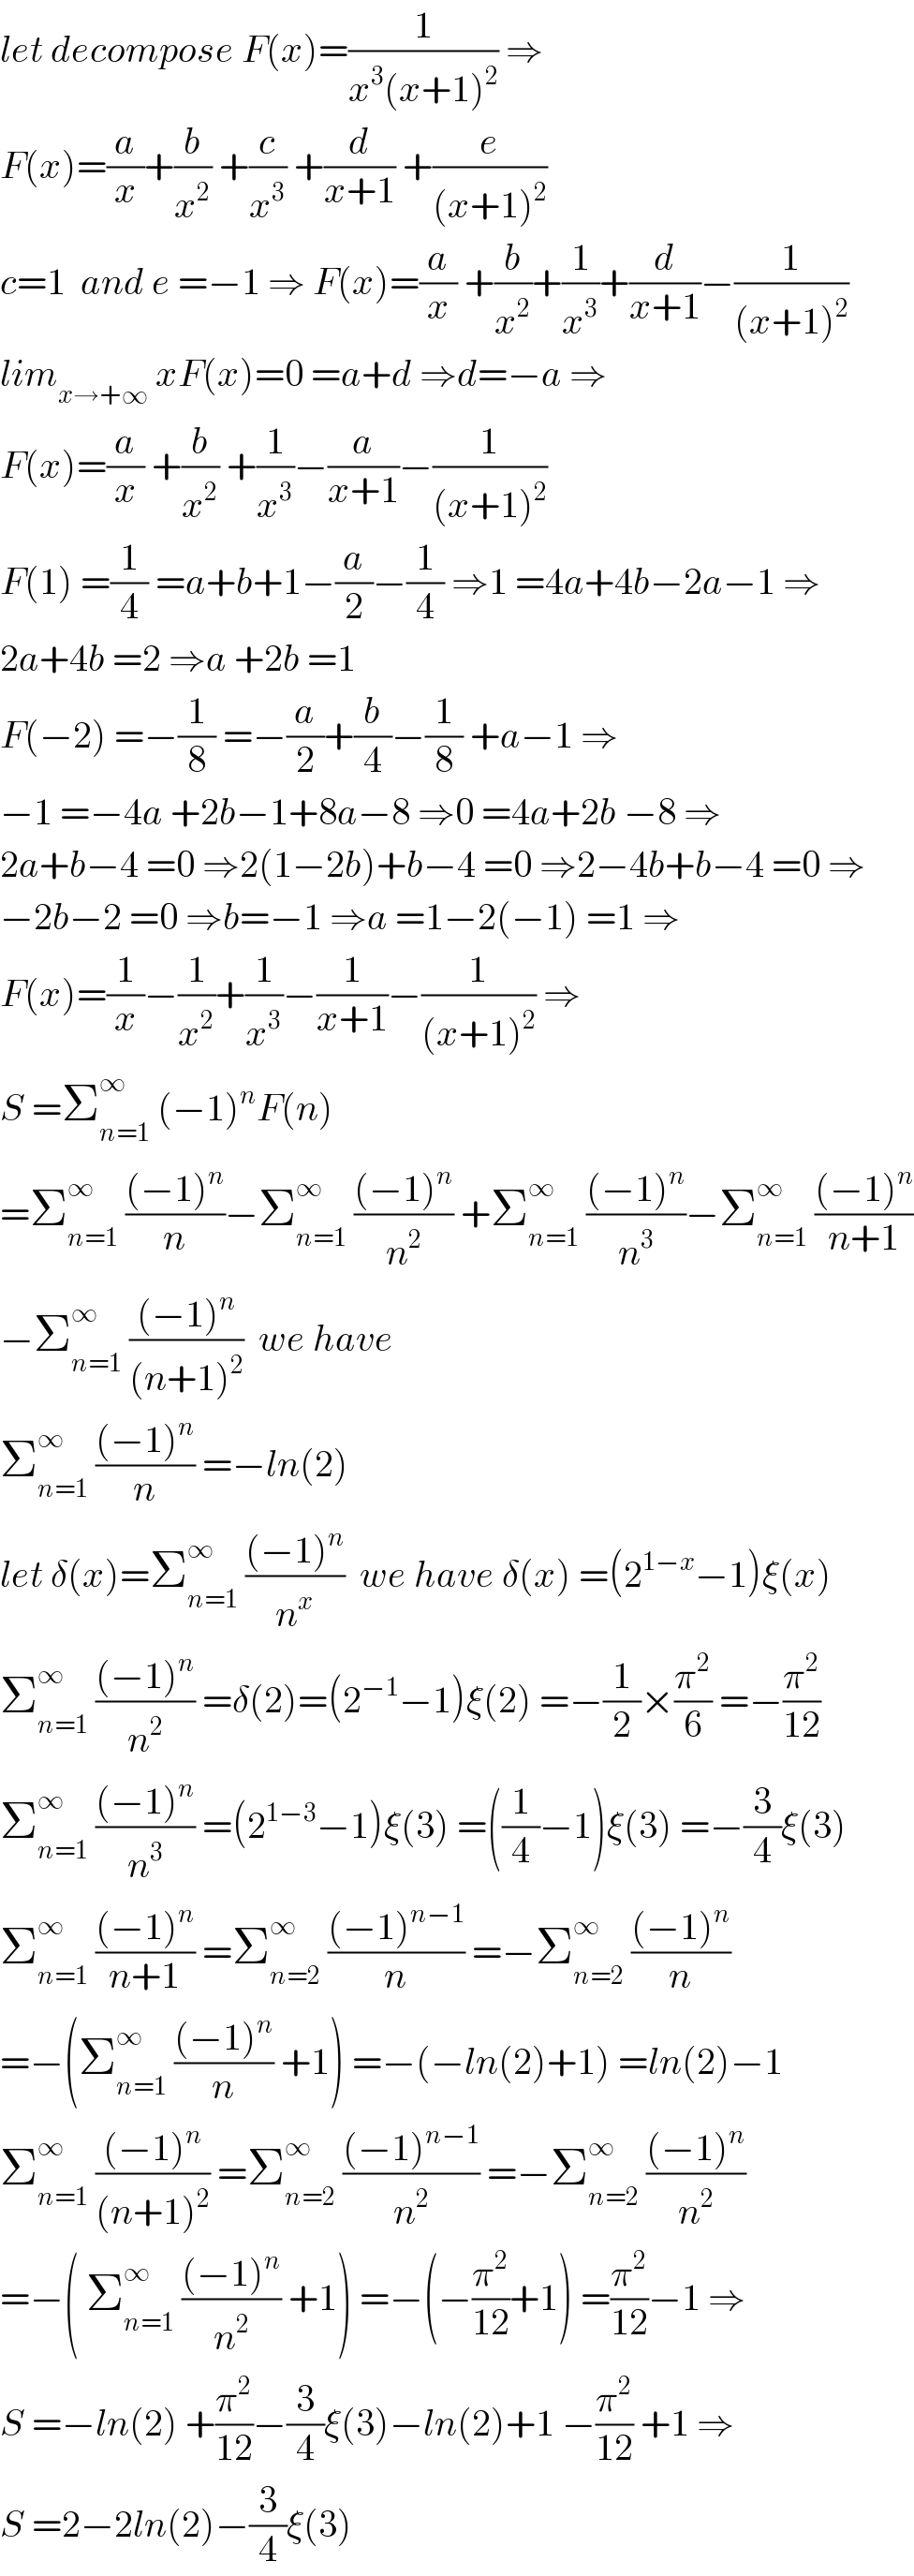 let decompose F(x)=(1/(x^3 (x+1)^2 )) ⇒  F(x)=(a/x)+(b/x^2 ) +(c/x^3 ) +(d/(x+1)) +(e/((x+1)^2 ))  c=1  and e =−1 ⇒ F(x)=(a/x) +(b/x^2 )+(1/x^3 )+(d/(x+1))−(1/((x+1)^2 ))  lim_(x→+∞)  xF(x)=0 =a+d ⇒d=−a ⇒  F(x)=(a/x) +(b/x^2 ) +(1/x^3 )−(a/(x+1))−(1/((x+1)^2 ))  F(1) =(1/4) =a+b+1−(a/2)−(1/4) ⇒1 =4a+4b−2a−1 ⇒  2a+4b =2 ⇒a +2b =1  F(−2) =−(1/8) =−(a/2)+(b/4)−(1/8) +a−1 ⇒  −1 =−4a +2b−1+8a−8 ⇒0 =4a+2b −8 ⇒  2a+b−4 =0 ⇒2(1−2b)+b−4 =0 ⇒2−4b+b−4 =0 ⇒  −2b−2 =0 ⇒b=−1 ⇒a =1−2(−1) =1 ⇒  F(x)=(1/x)−(1/x^2 )+(1/x^3 )−(1/(x+1))−(1/((x+1)^2 )) ⇒  S =Σ_(n=1) ^∞  (−1)^n F(n)   =Σ_(n=1) ^∞  (((−1)^n )/n)−Σ_(n=1) ^∞  (((−1)^n )/n^2 ) +Σ_(n=1) ^∞  (((−1)^n )/n^3 )−Σ_(n=1) ^∞  (((−1)^n )/(n+1))  −Σ_(n=1) ^∞  (((−1)^n )/((n+1)^2 ))  we have  Σ_(n=1) ^∞  (((−1)^n )/n) =−ln(2)  let δ(x)=Σ_(n=1) ^∞  (((−1)^n )/n^x )  we have δ(x) =(2^(1−x) −1)ξ(x)  Σ_(n=1) ^∞  (((−1)^n )/n^2 ) =δ(2)=(2^(−1) −1)ξ(2) =−(1/2)×(π^2 /6) =−(π^2 /(12))  Σ_(n=1) ^∞  (((−1)^n )/n^3 ) =(2^(1−3) −1)ξ(3) =((1/4)−1)ξ(3) =−(3/4)ξ(3)  Σ_(n=1) ^∞  (((−1)^n )/(n+1)) =Σ_(n=2) ^∞  (((−1)^(n−1) )/n) =−Σ_(n=2) ^∞  (((−1)^n )/n)  =−(Σ_(n=1) ^∞  (((−1)^n )/n) +1) =−(−ln(2)+1) =ln(2)−1  Σ_(n=1) ^∞  (((−1)^n )/((n+1)^2 )) =Σ_(n=2) ^∞  (((−1)^(n−1) )/n^2 ) =−Σ_(n=2) ^∞  (((−1)^n )/n^2 )  =−( Σ_(n=1) ^∞  (((−1)^n )/n^2 ) +1) =−(−(π^2 /(12))+1) =(π^2 /(12))−1 ⇒  S =−ln(2) +(π^2 /(12))−(3/4)ξ(3)−ln(2)+1 −(π^2 /(12)) +1 ⇒  S =2−2ln(2)−(3/4)ξ(3)  